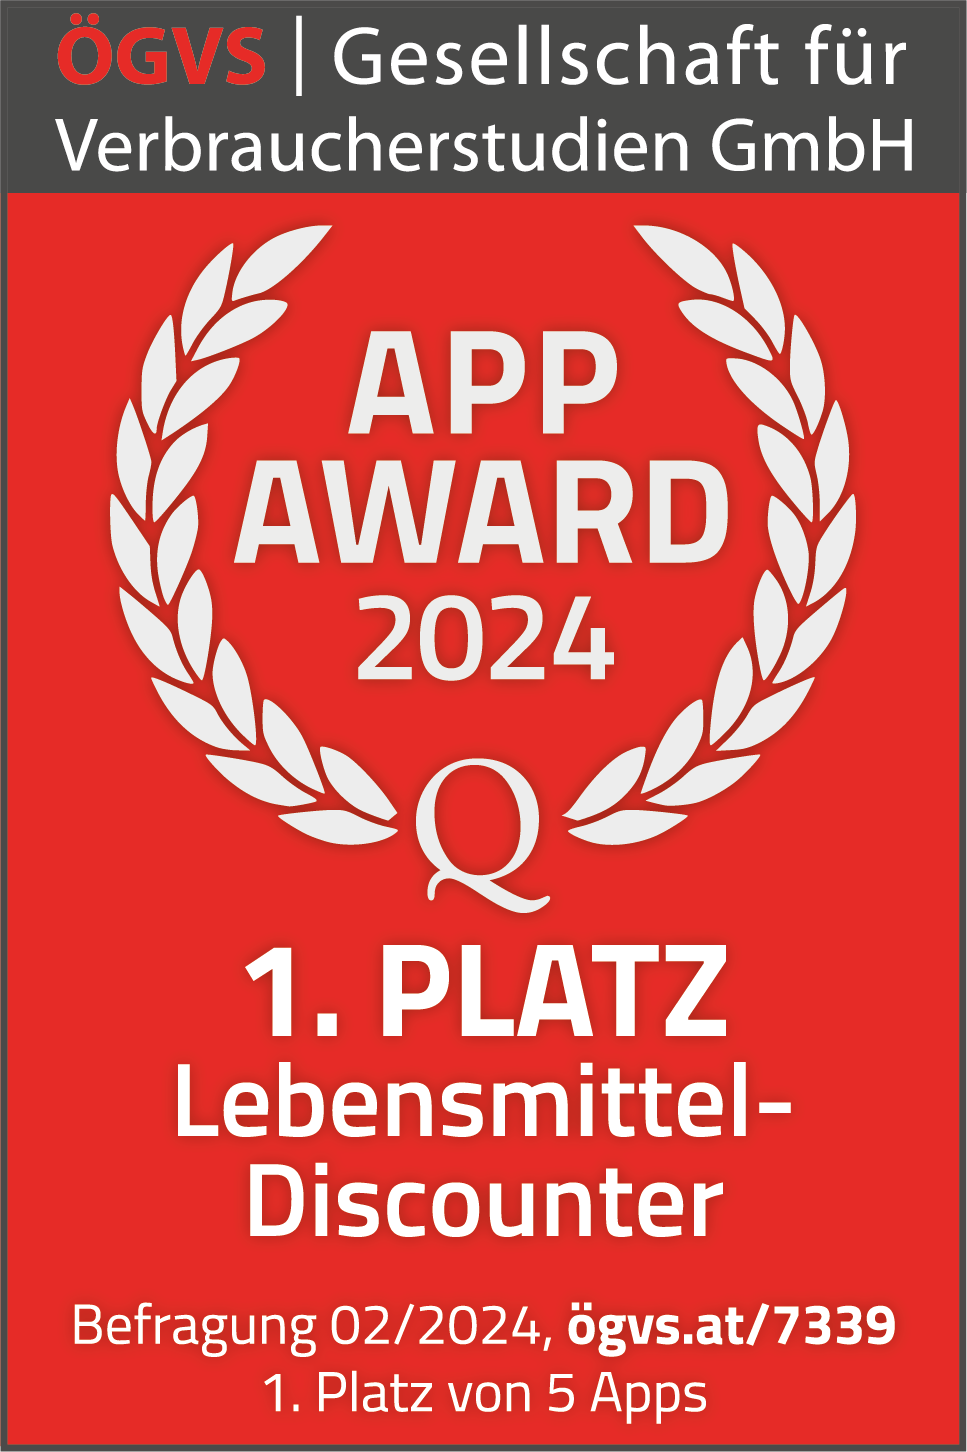 App Award